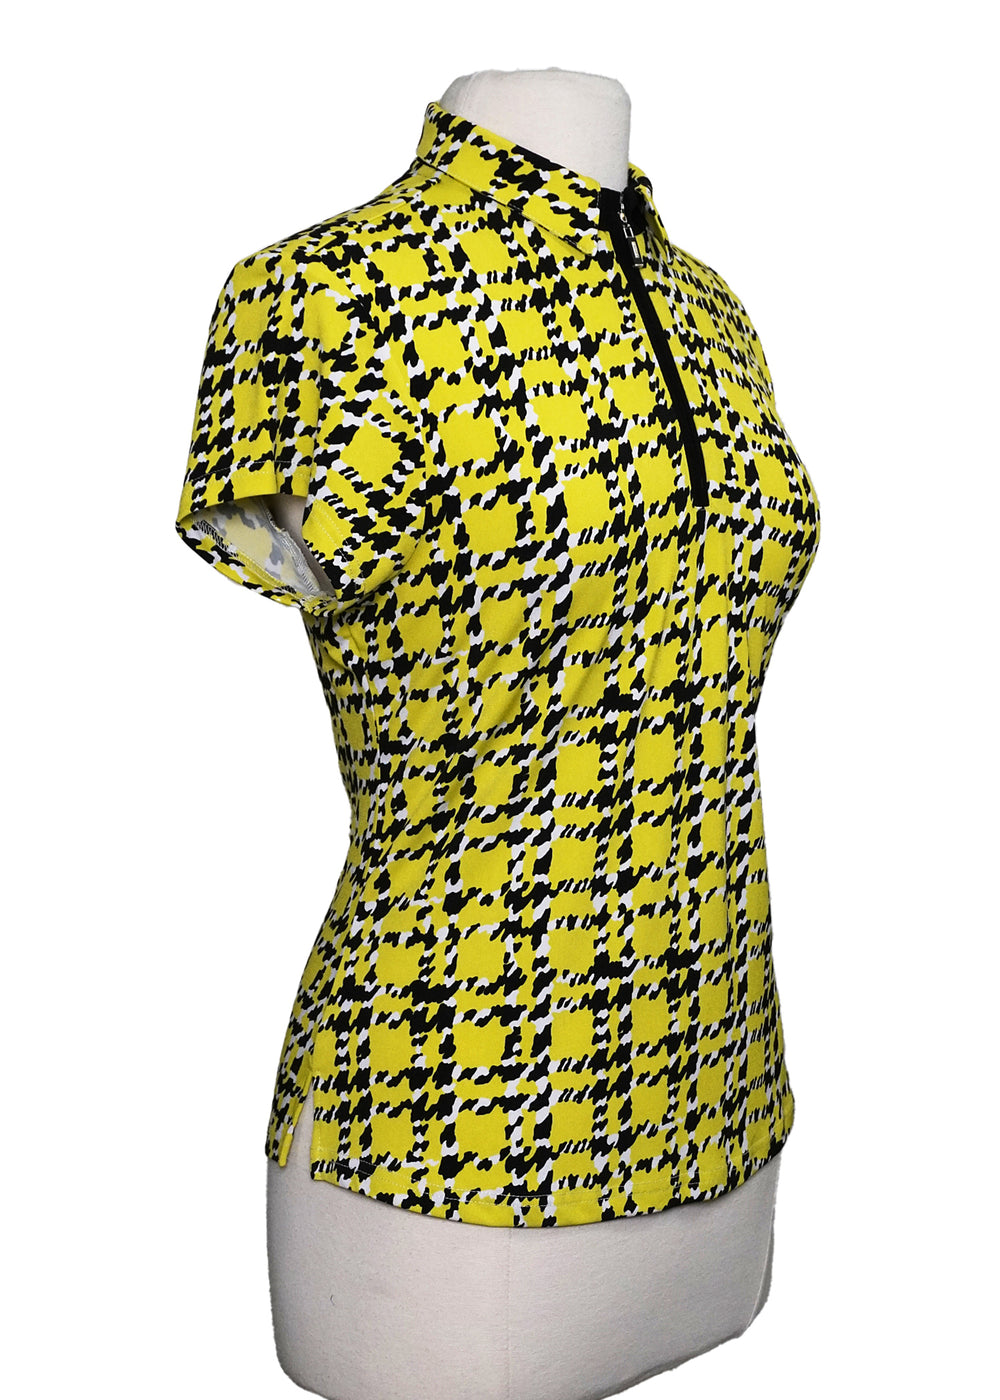 DKNY Golf Short Sleeve Top - Yellow - Size Medium - Skorzie